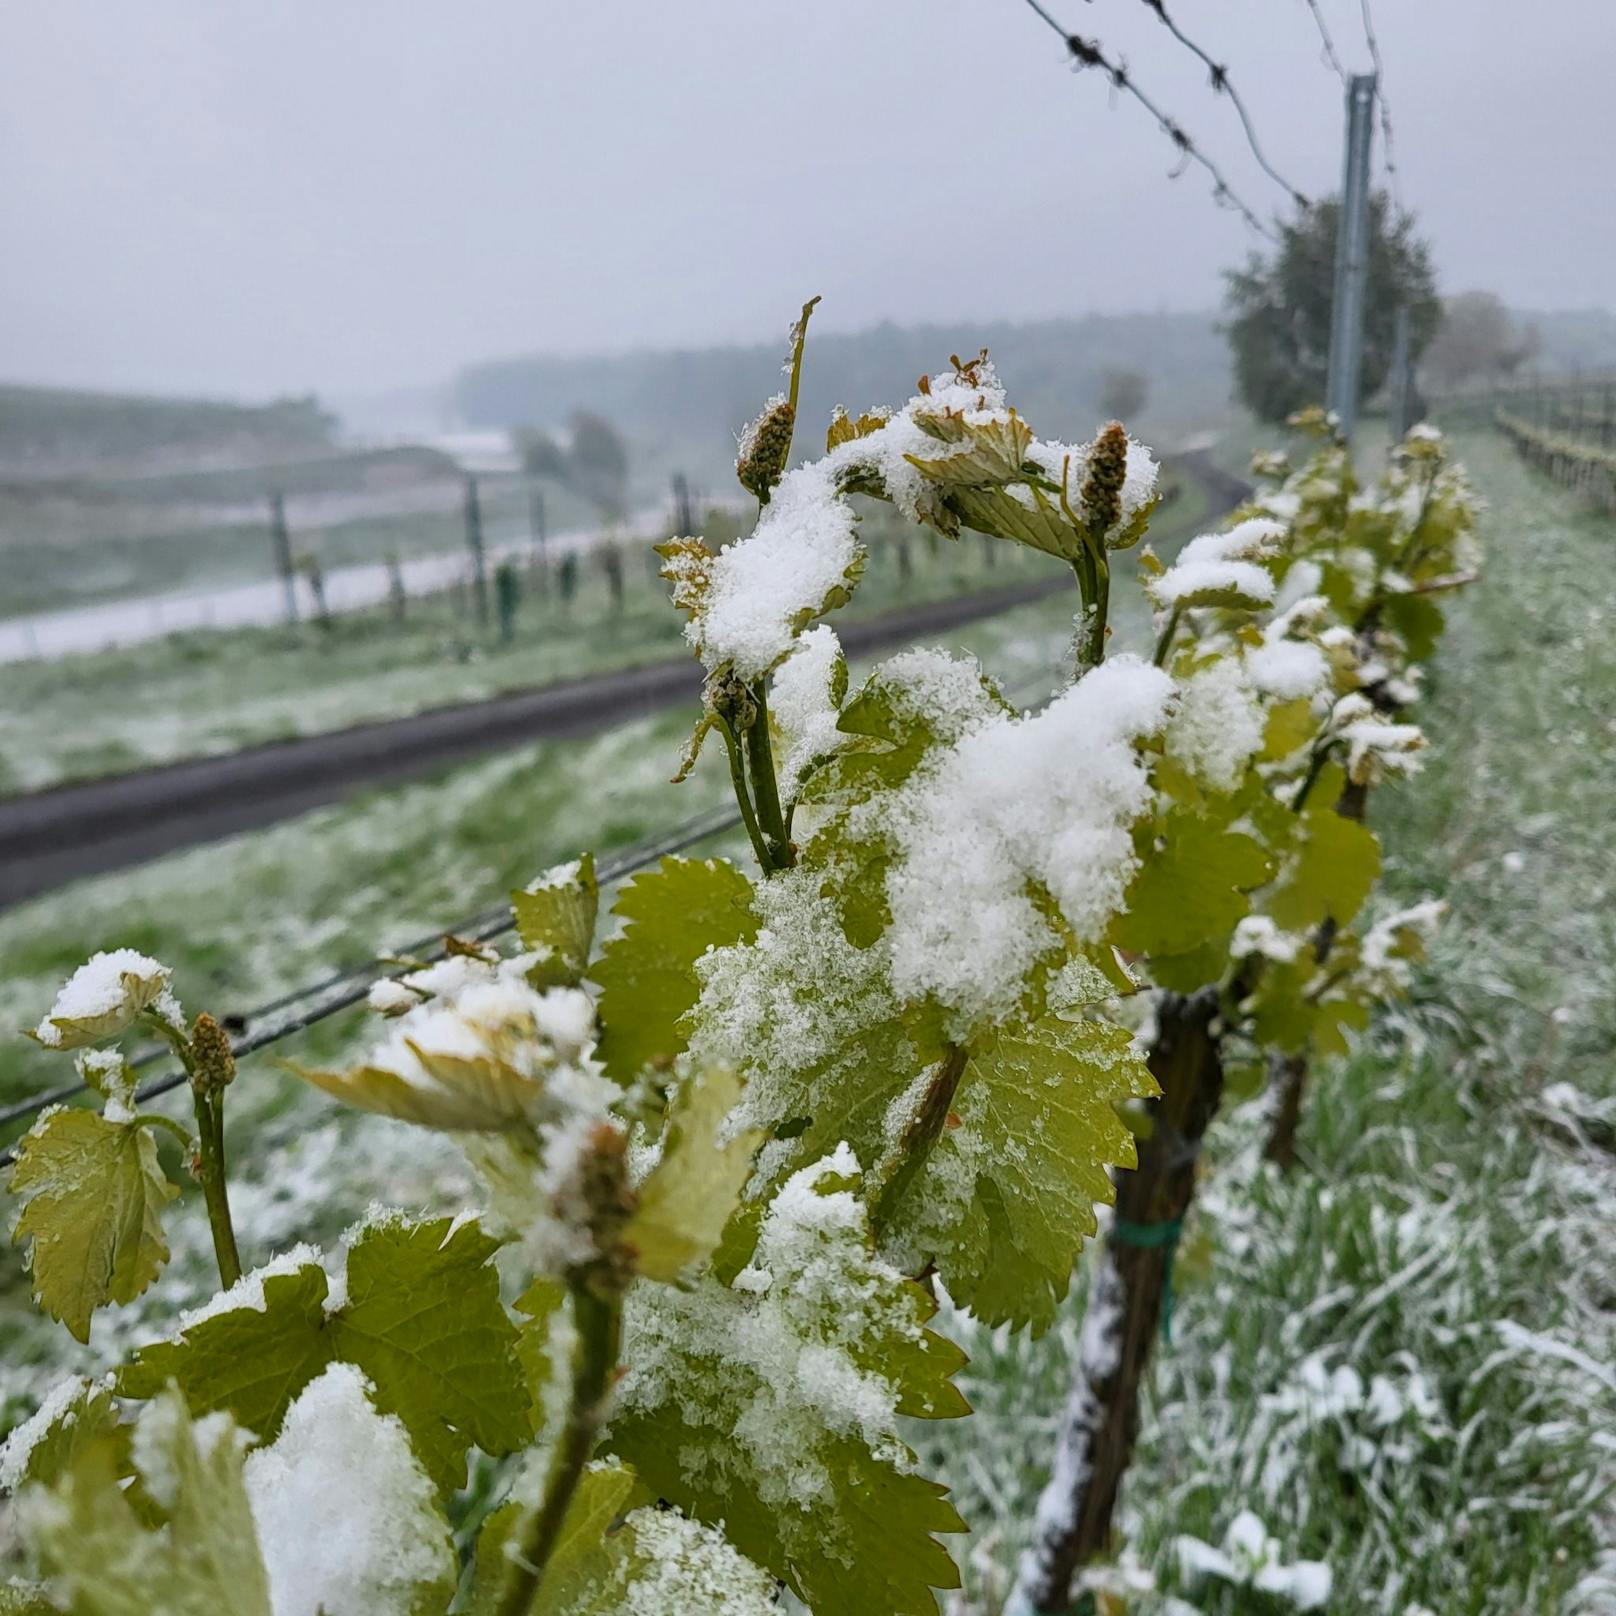 Der Austrieb im Weingarten hatte die Länge wie normalerweise Mitte/Ende Mai, jetzt kam der Frost.